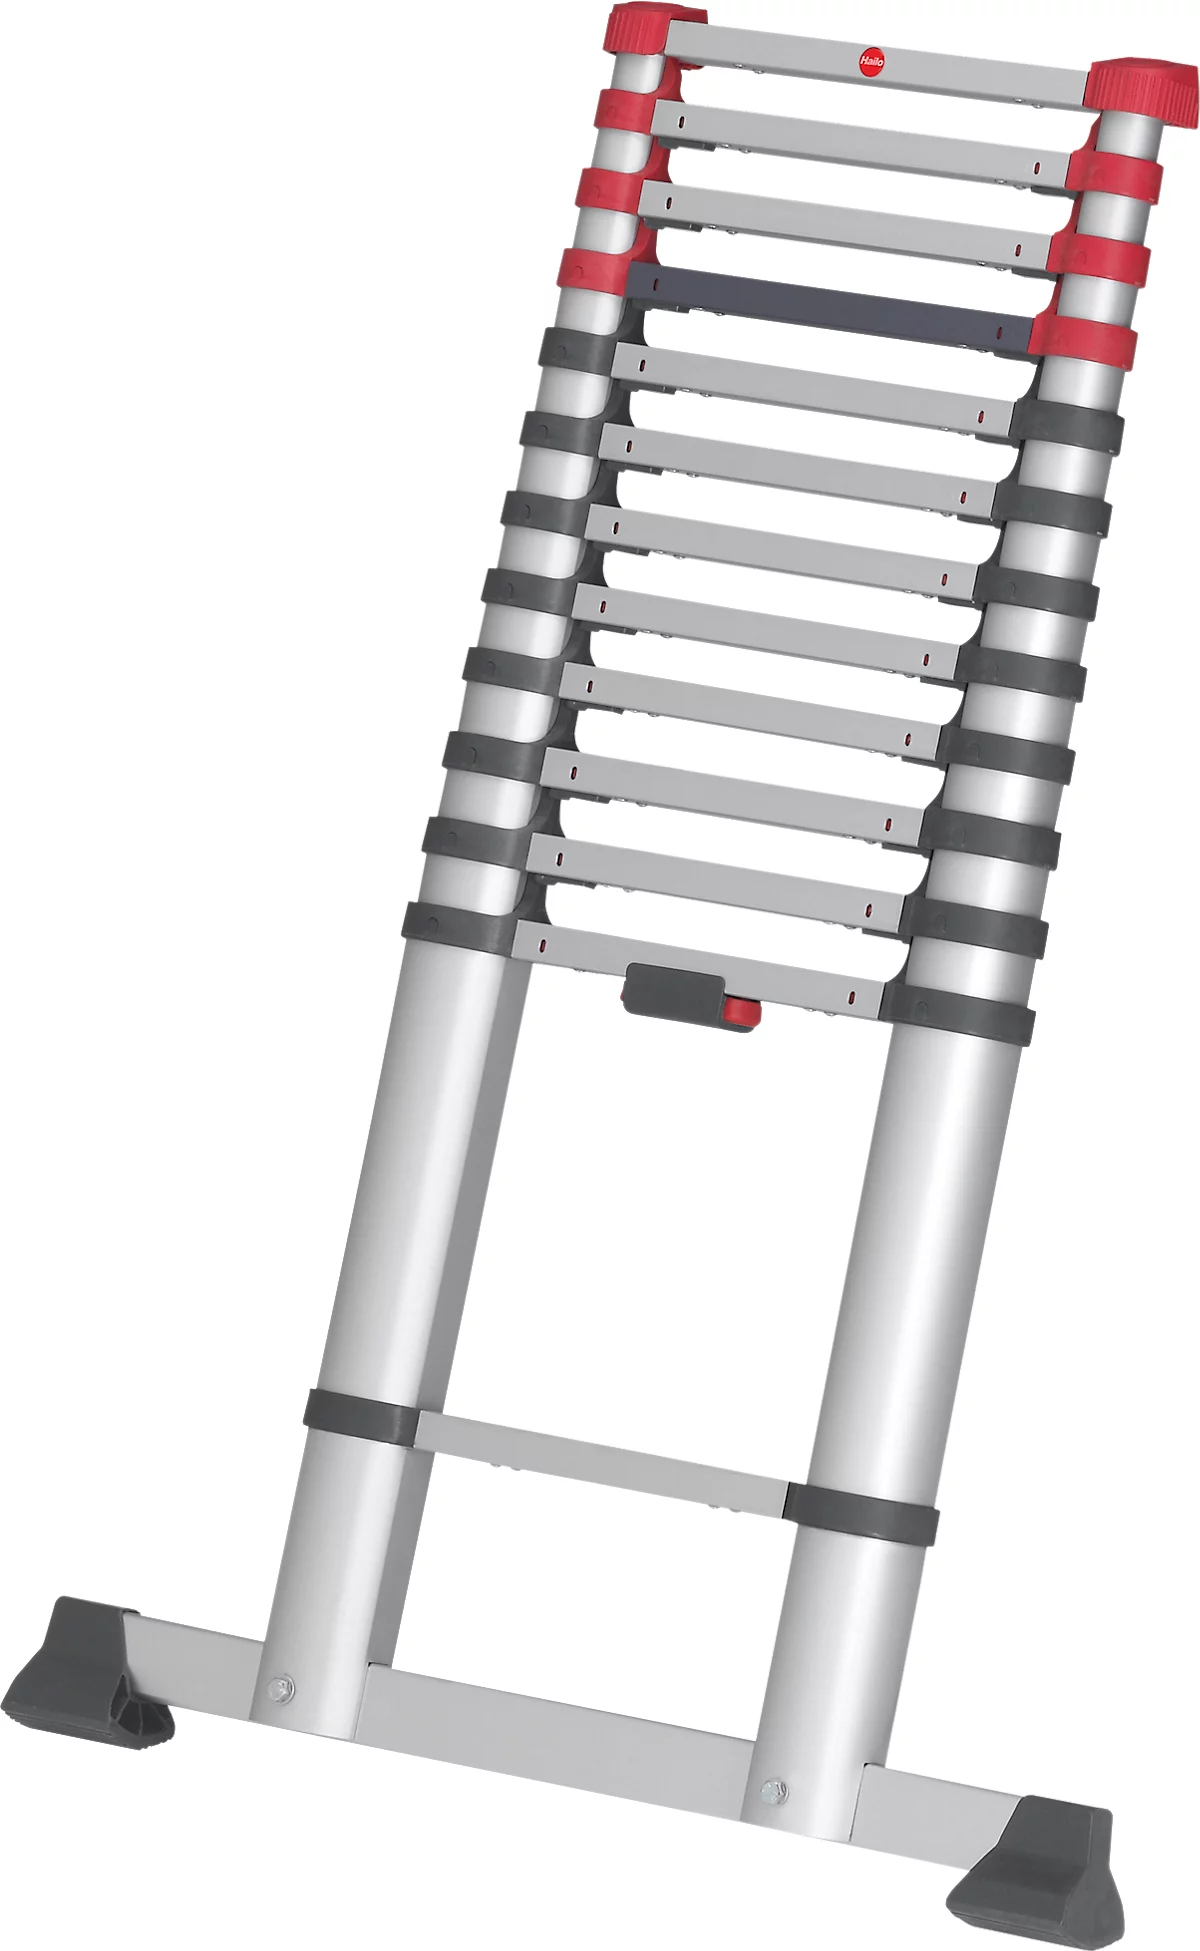 Escalera telescópica Hailo T80 FlexLine, EN 131-6, regulable en altura, desbloqueo con una mano, travesaño, hasta 150 kg, 13 peldaños